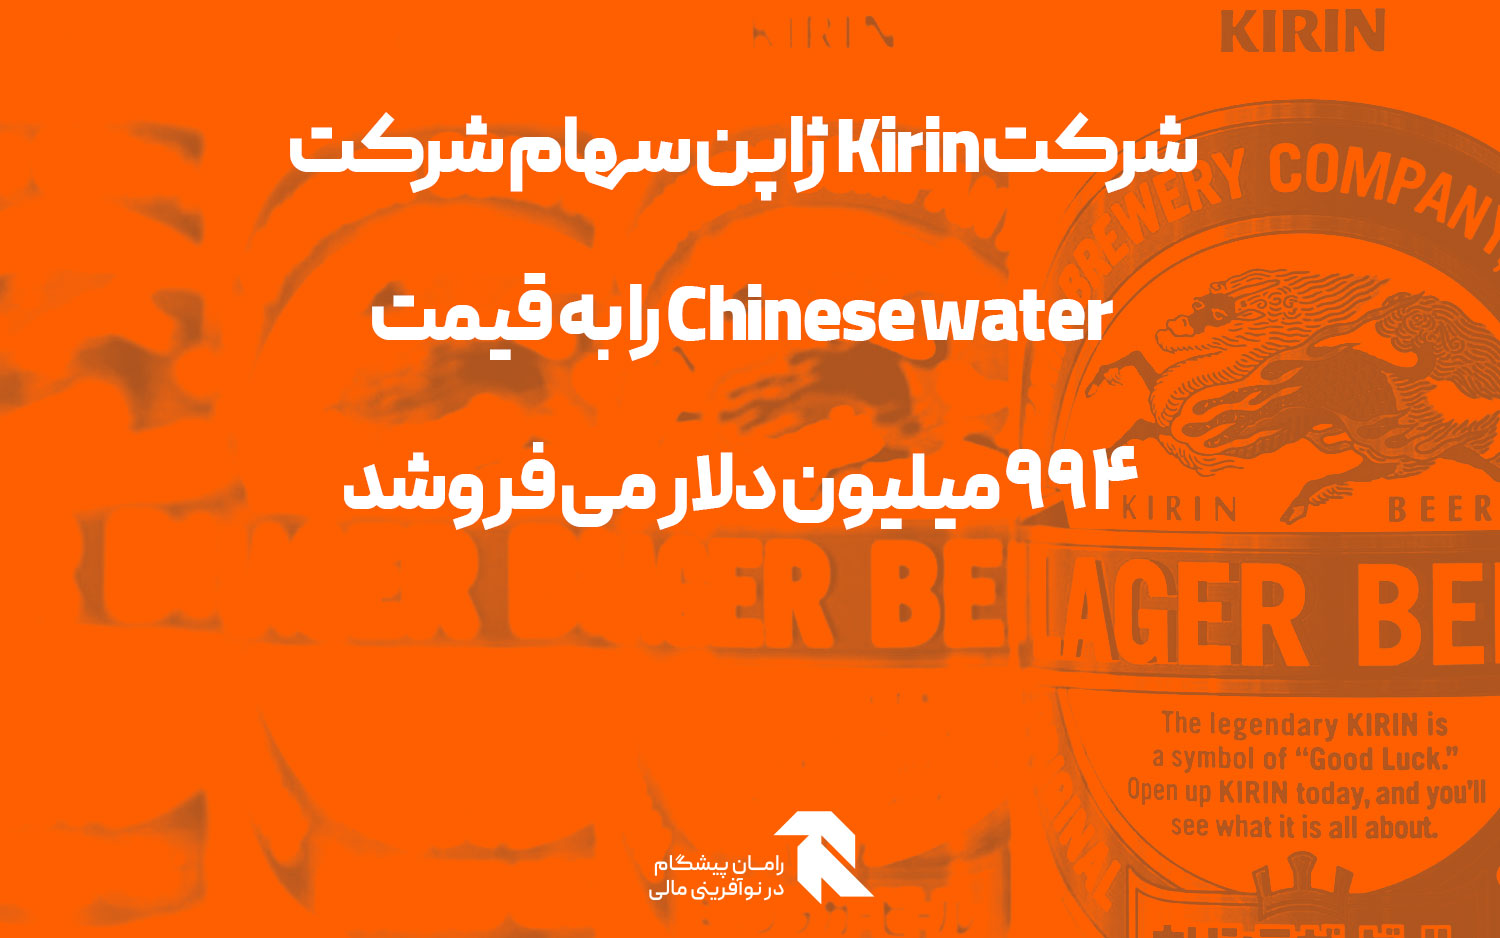 شرکت Kirin ژاپن سهام شرکت Chinese water را به قیمت 994 میلیون دلار می فروشد